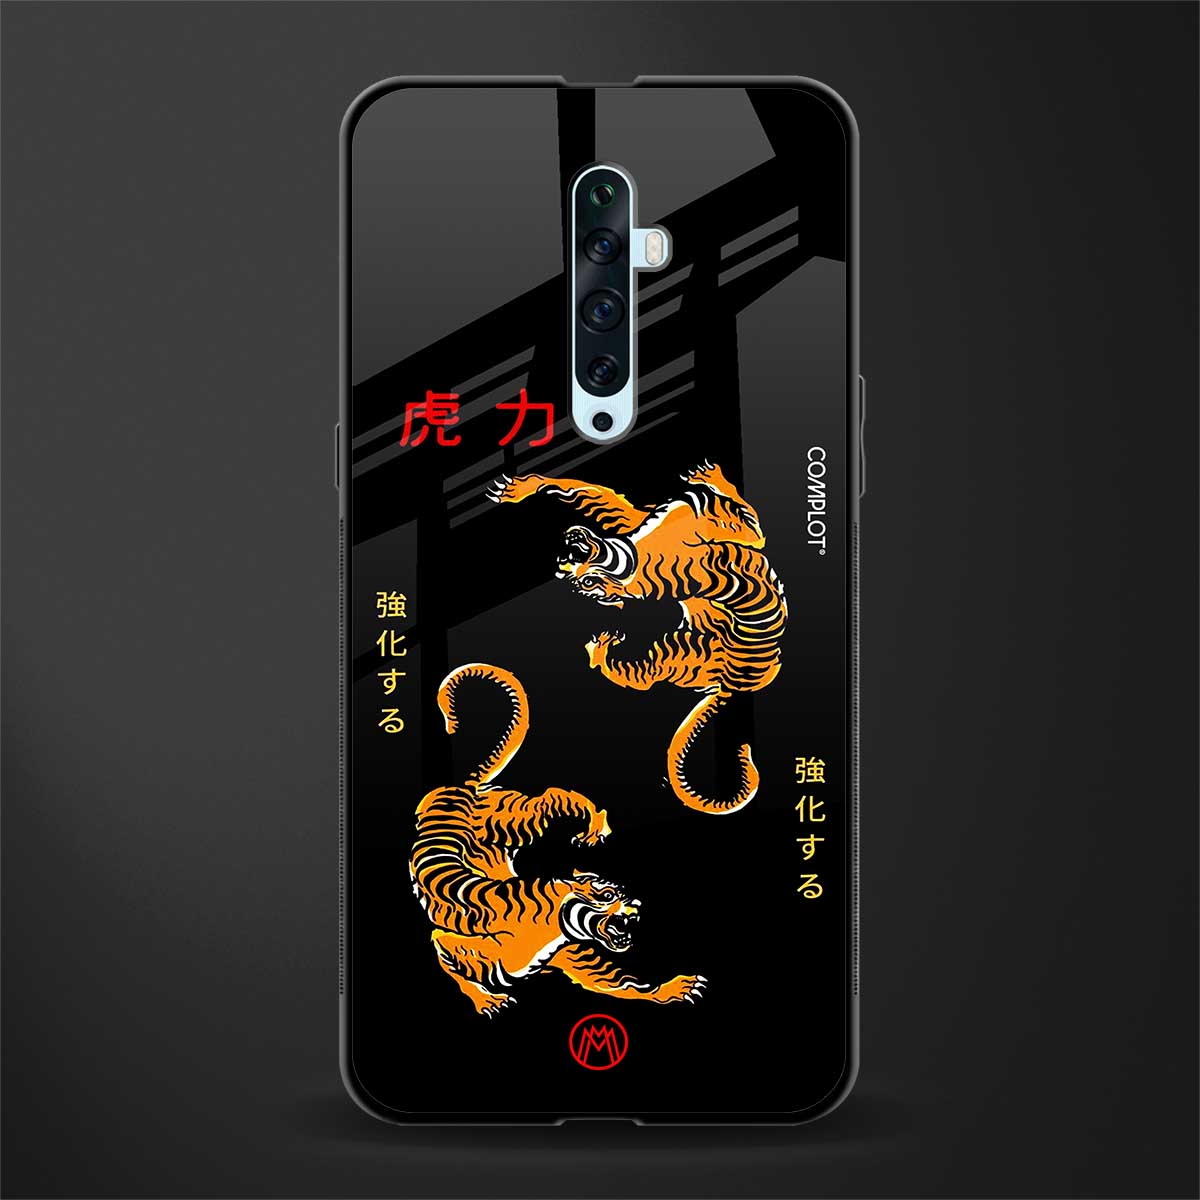 tigers black glass case for oppo reno 2z image